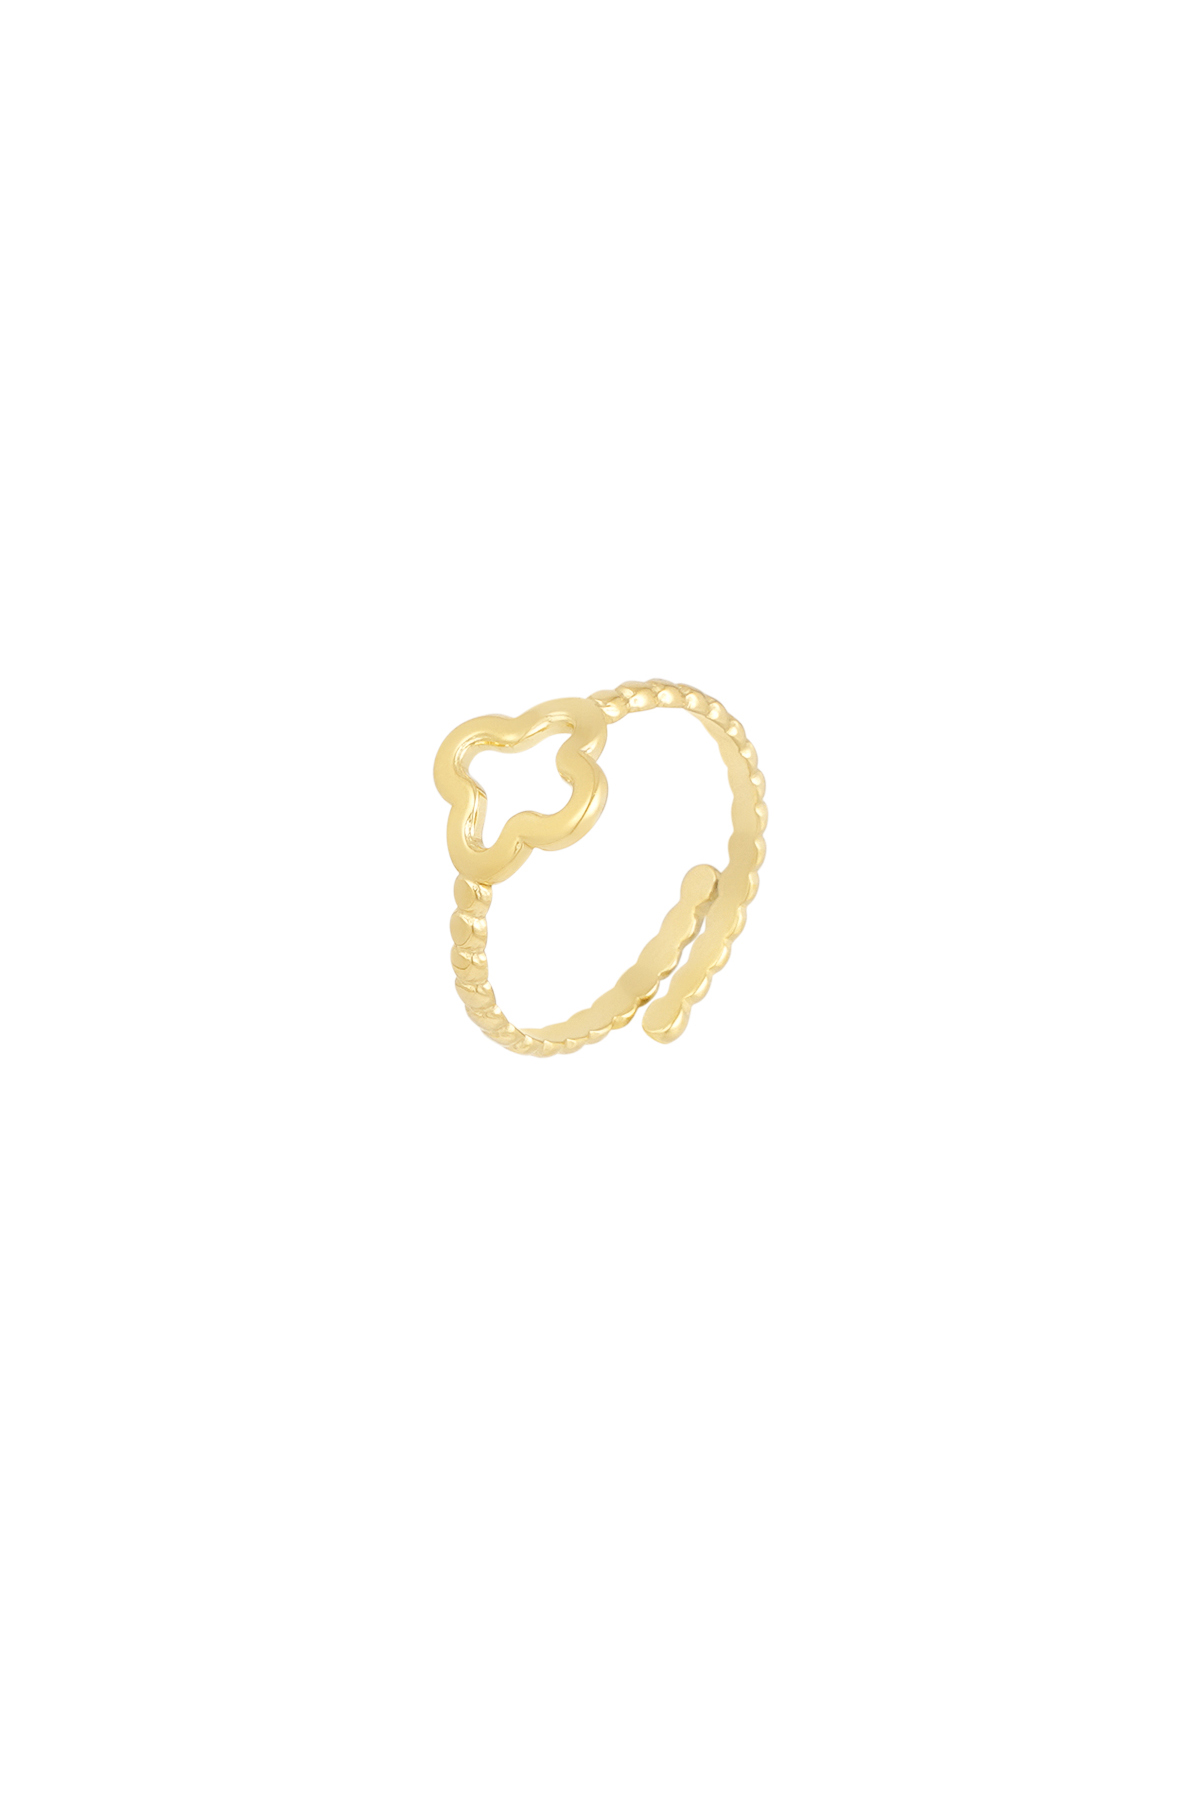 Gedraaide ring met klaver - goud 